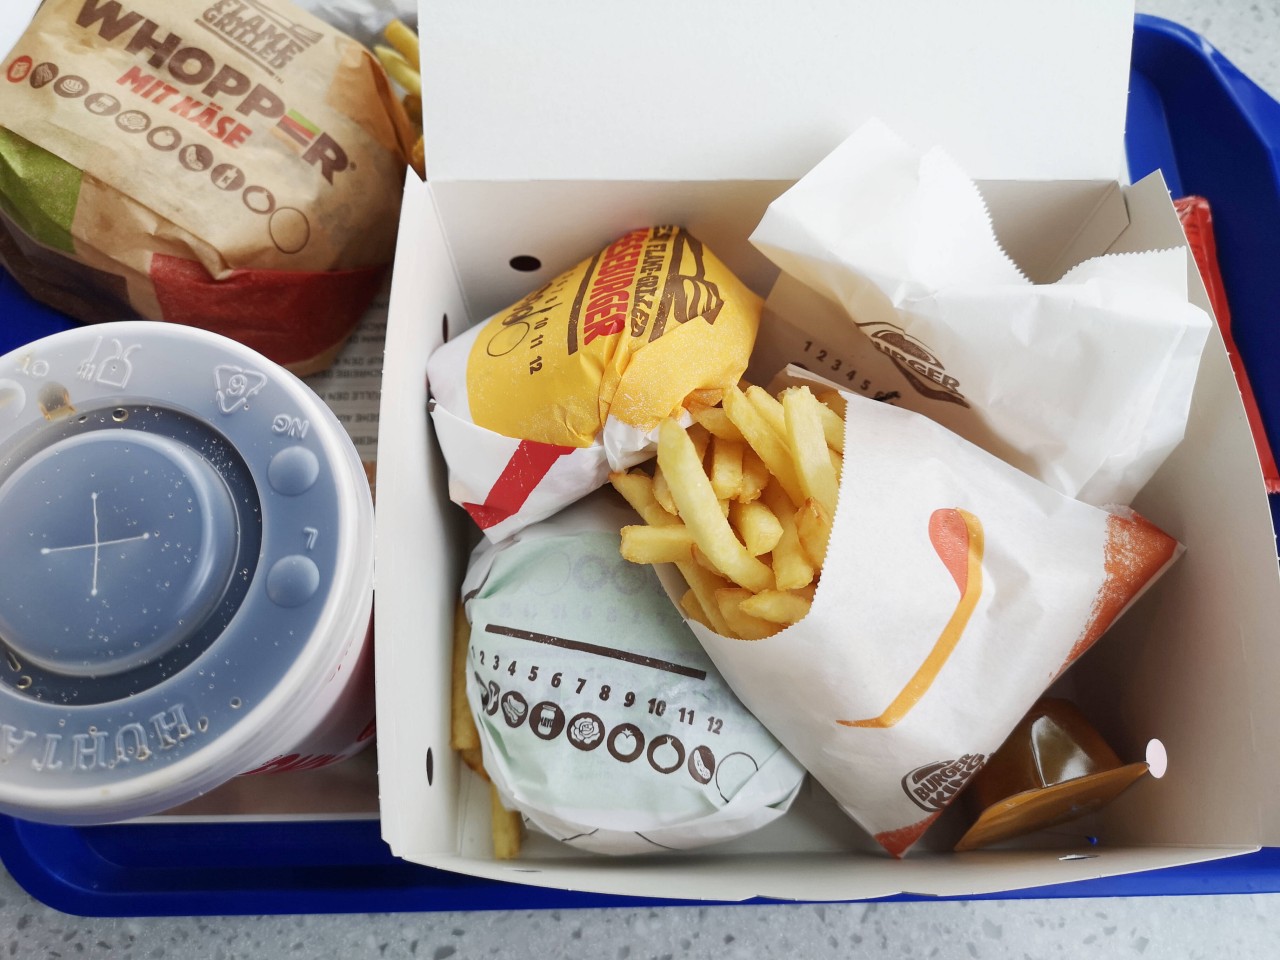 Alles da? Burger King empfiehlt, die Bestellungen immer direkt nach Erhalt zu überprüfen. (Symbolbild)